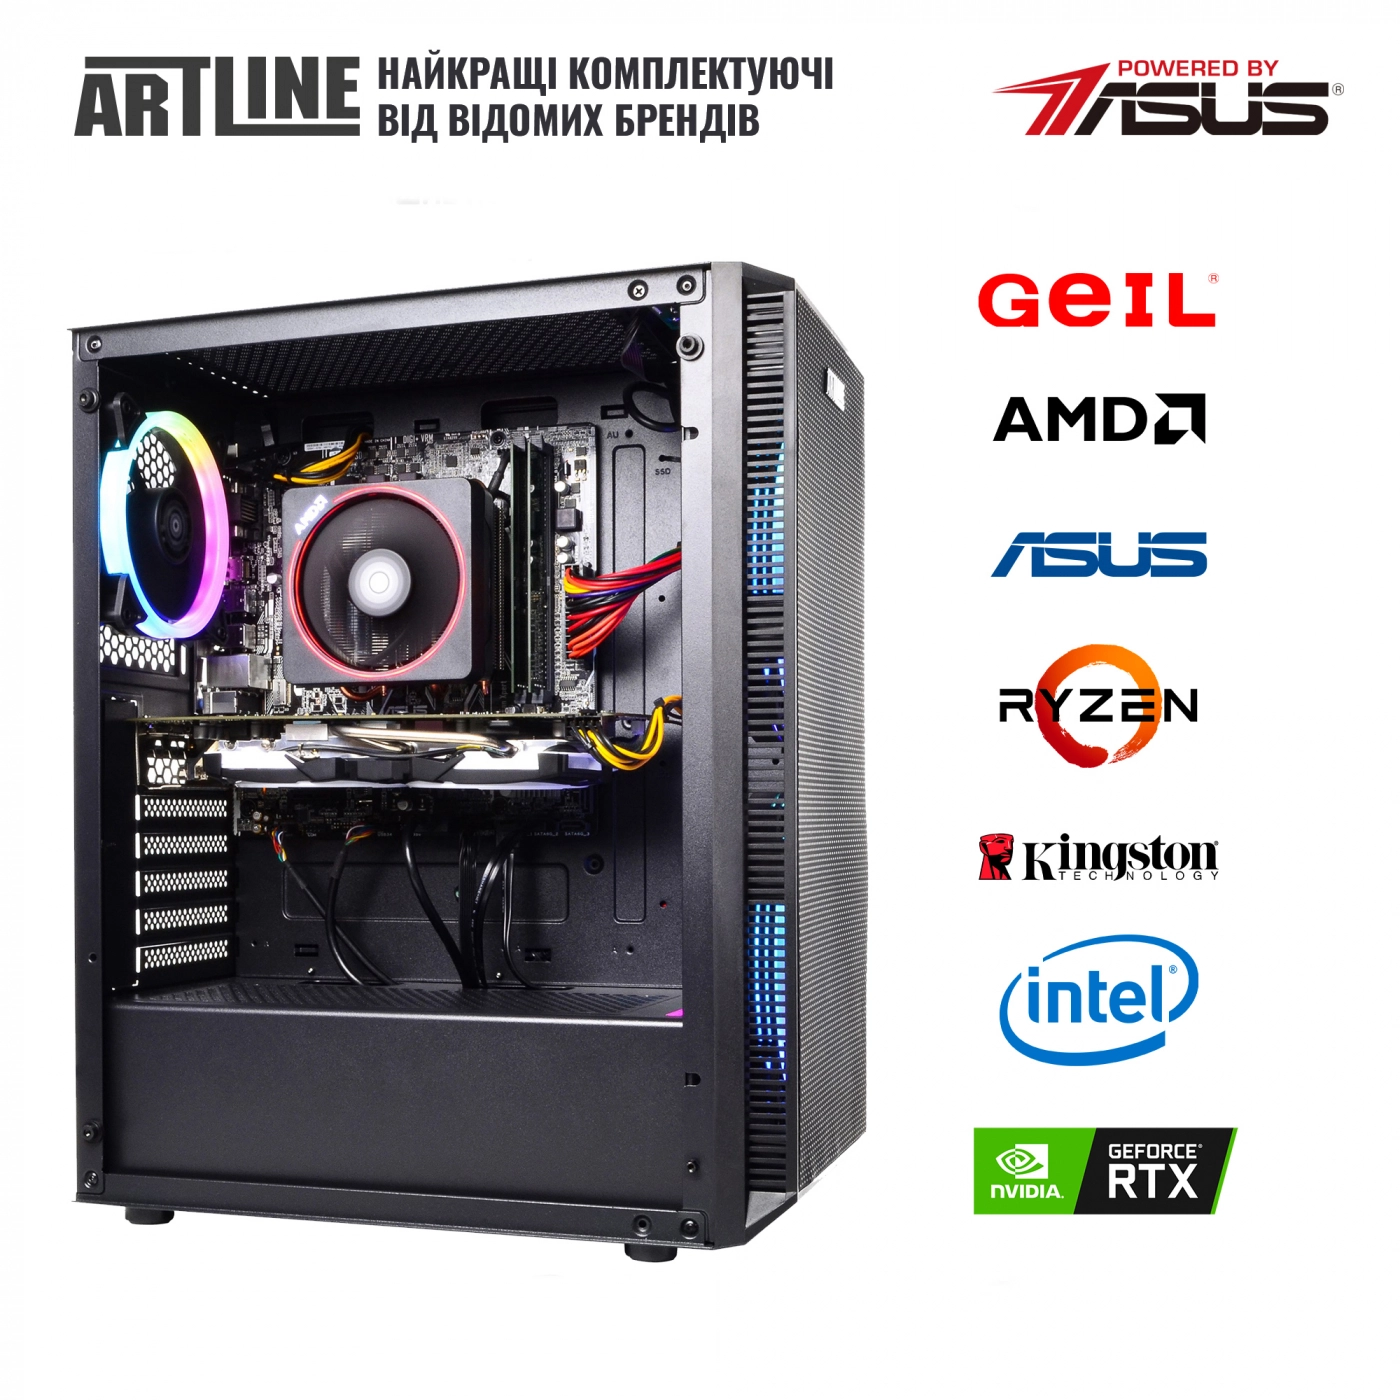 Купить Компьютер ARTLINE Gaming X65v32 - фото 6